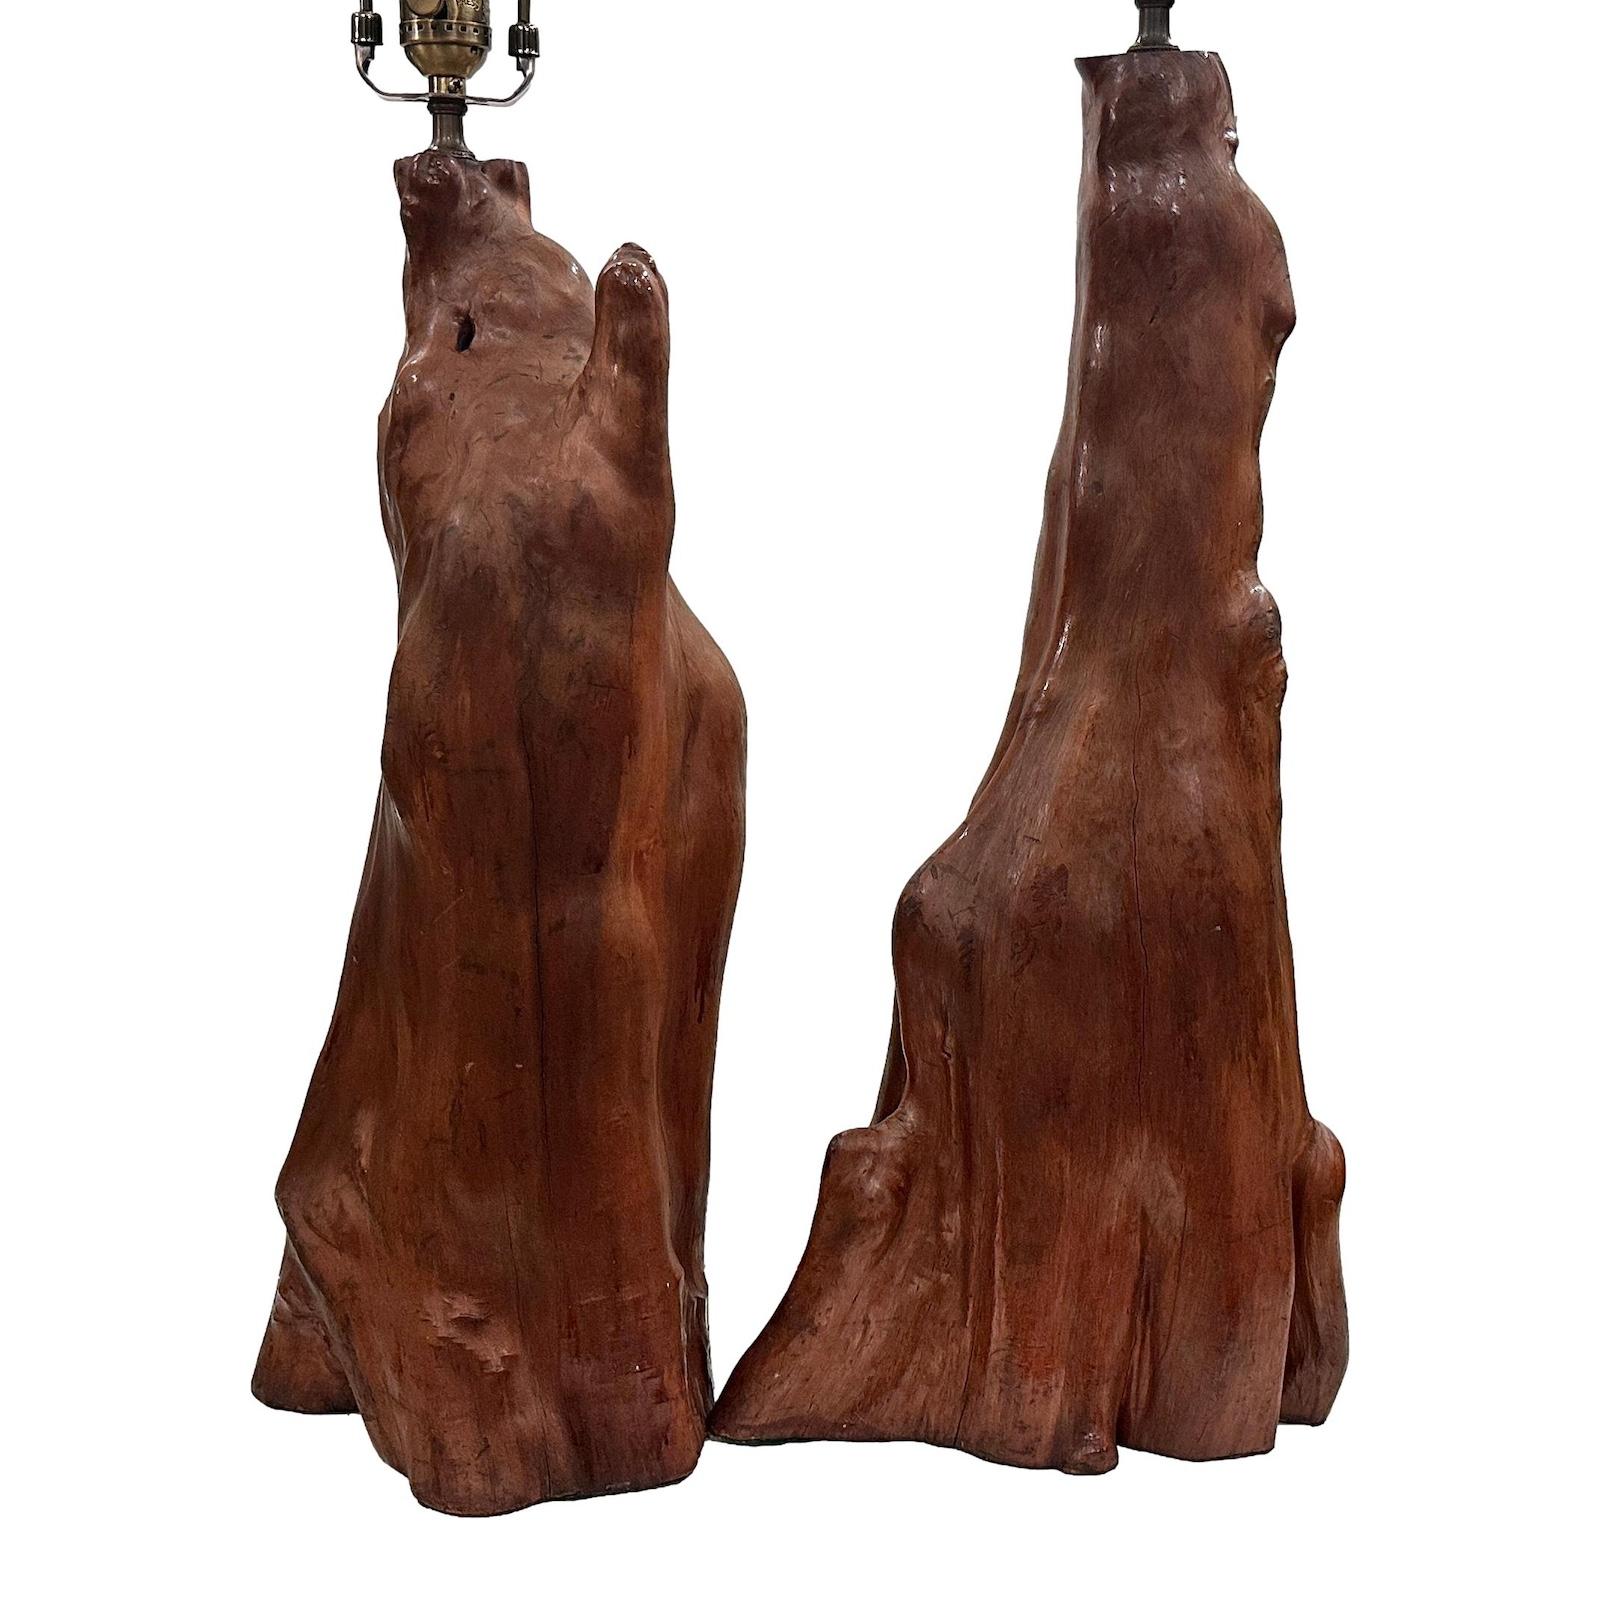 Ein Paar italienische Holzlampen aus den 1960er Jahren.

Abmessungen:
Höhe des Körpers: 22